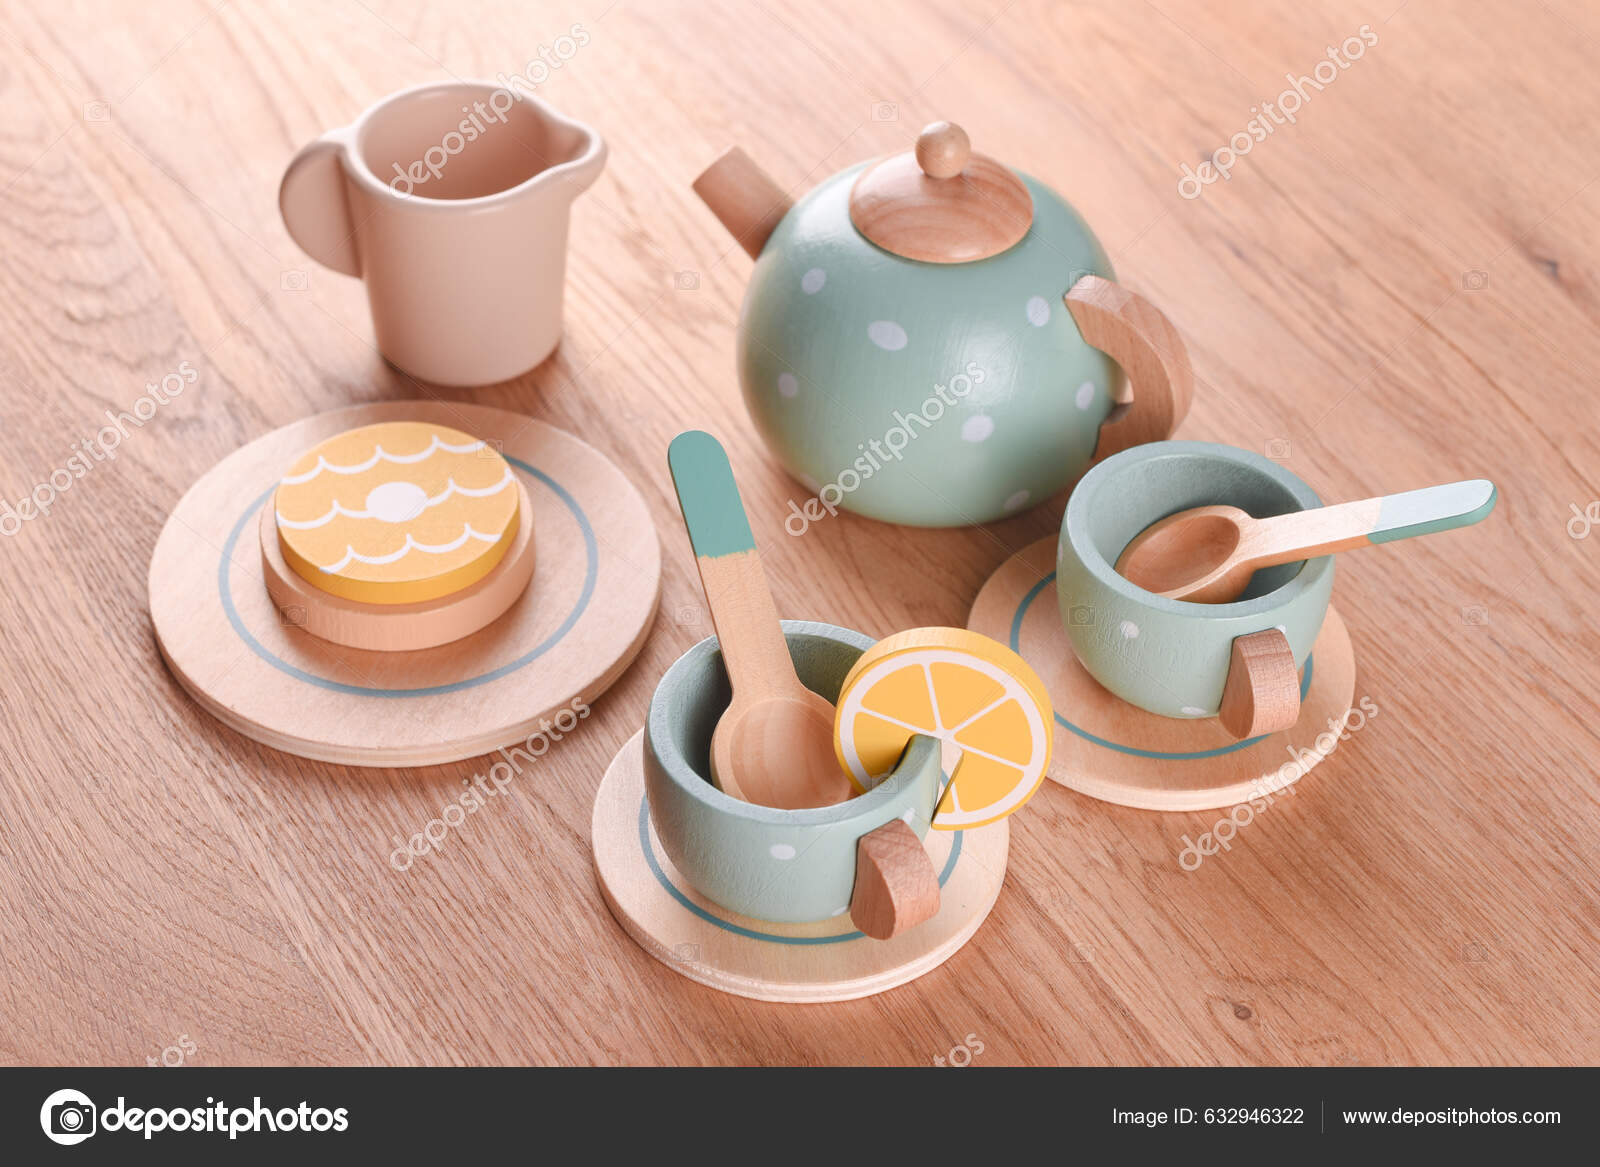 Jogo de chá infantil Simulação, Bule e copo, Brinquedo de cozinha